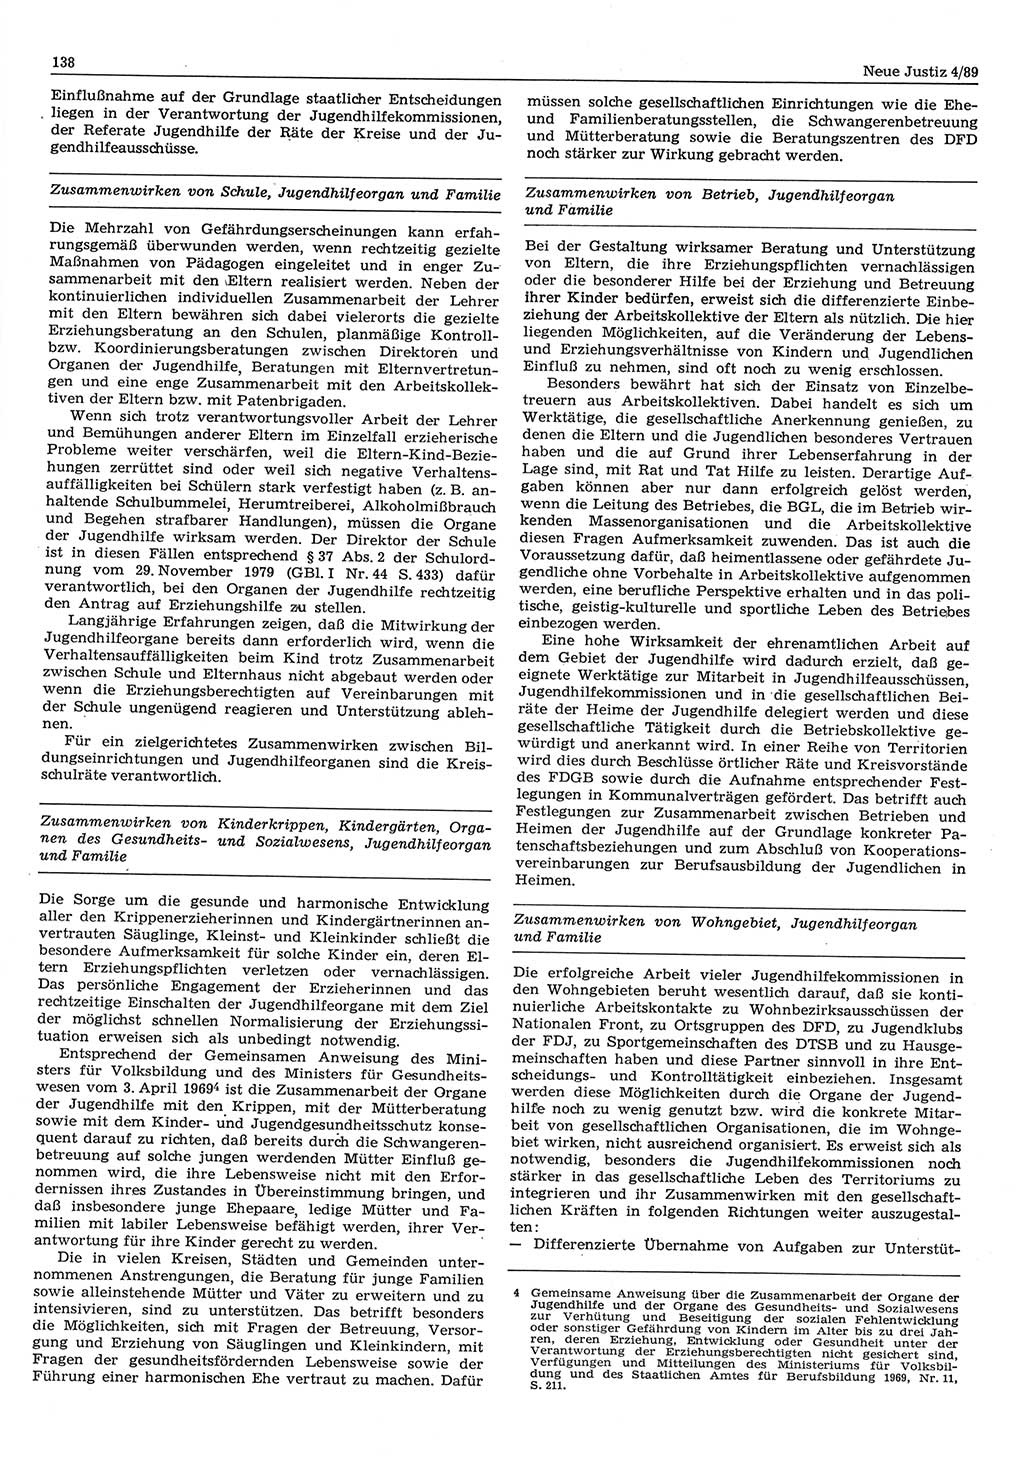 Neue Justiz (NJ), Zeitschrift für sozialistisches Recht und Gesetzlichkeit [Deutsche Demokratische Republik (DDR)], 43. Jahrgang 1989, Seite 138 (NJ DDR 1989, S. 138)